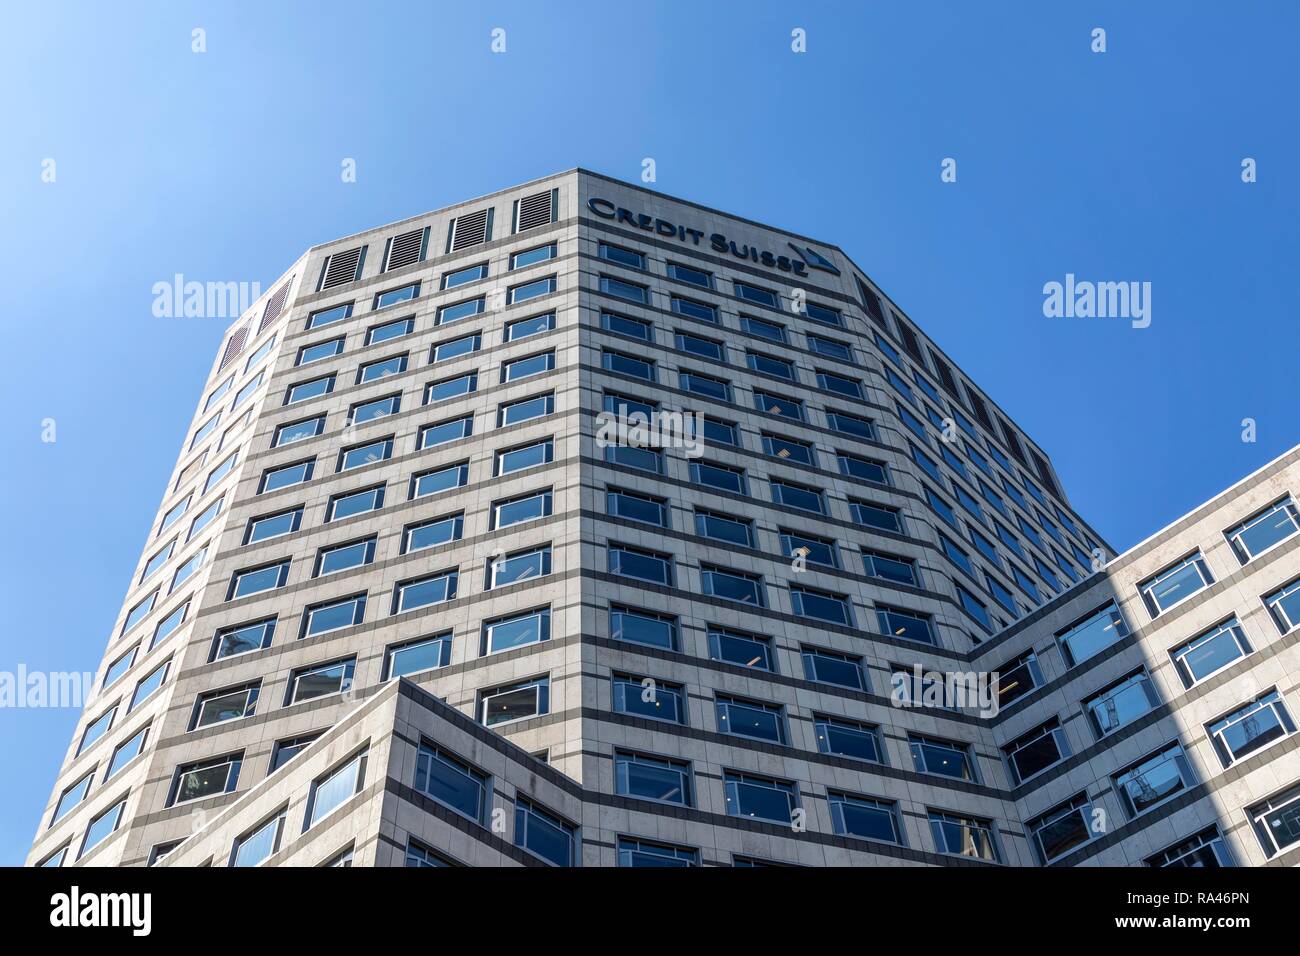 La banque suisse Credit Suisse, quartier financier et bancaire Canary Wharf, London, United Kingdom Banque D'Images